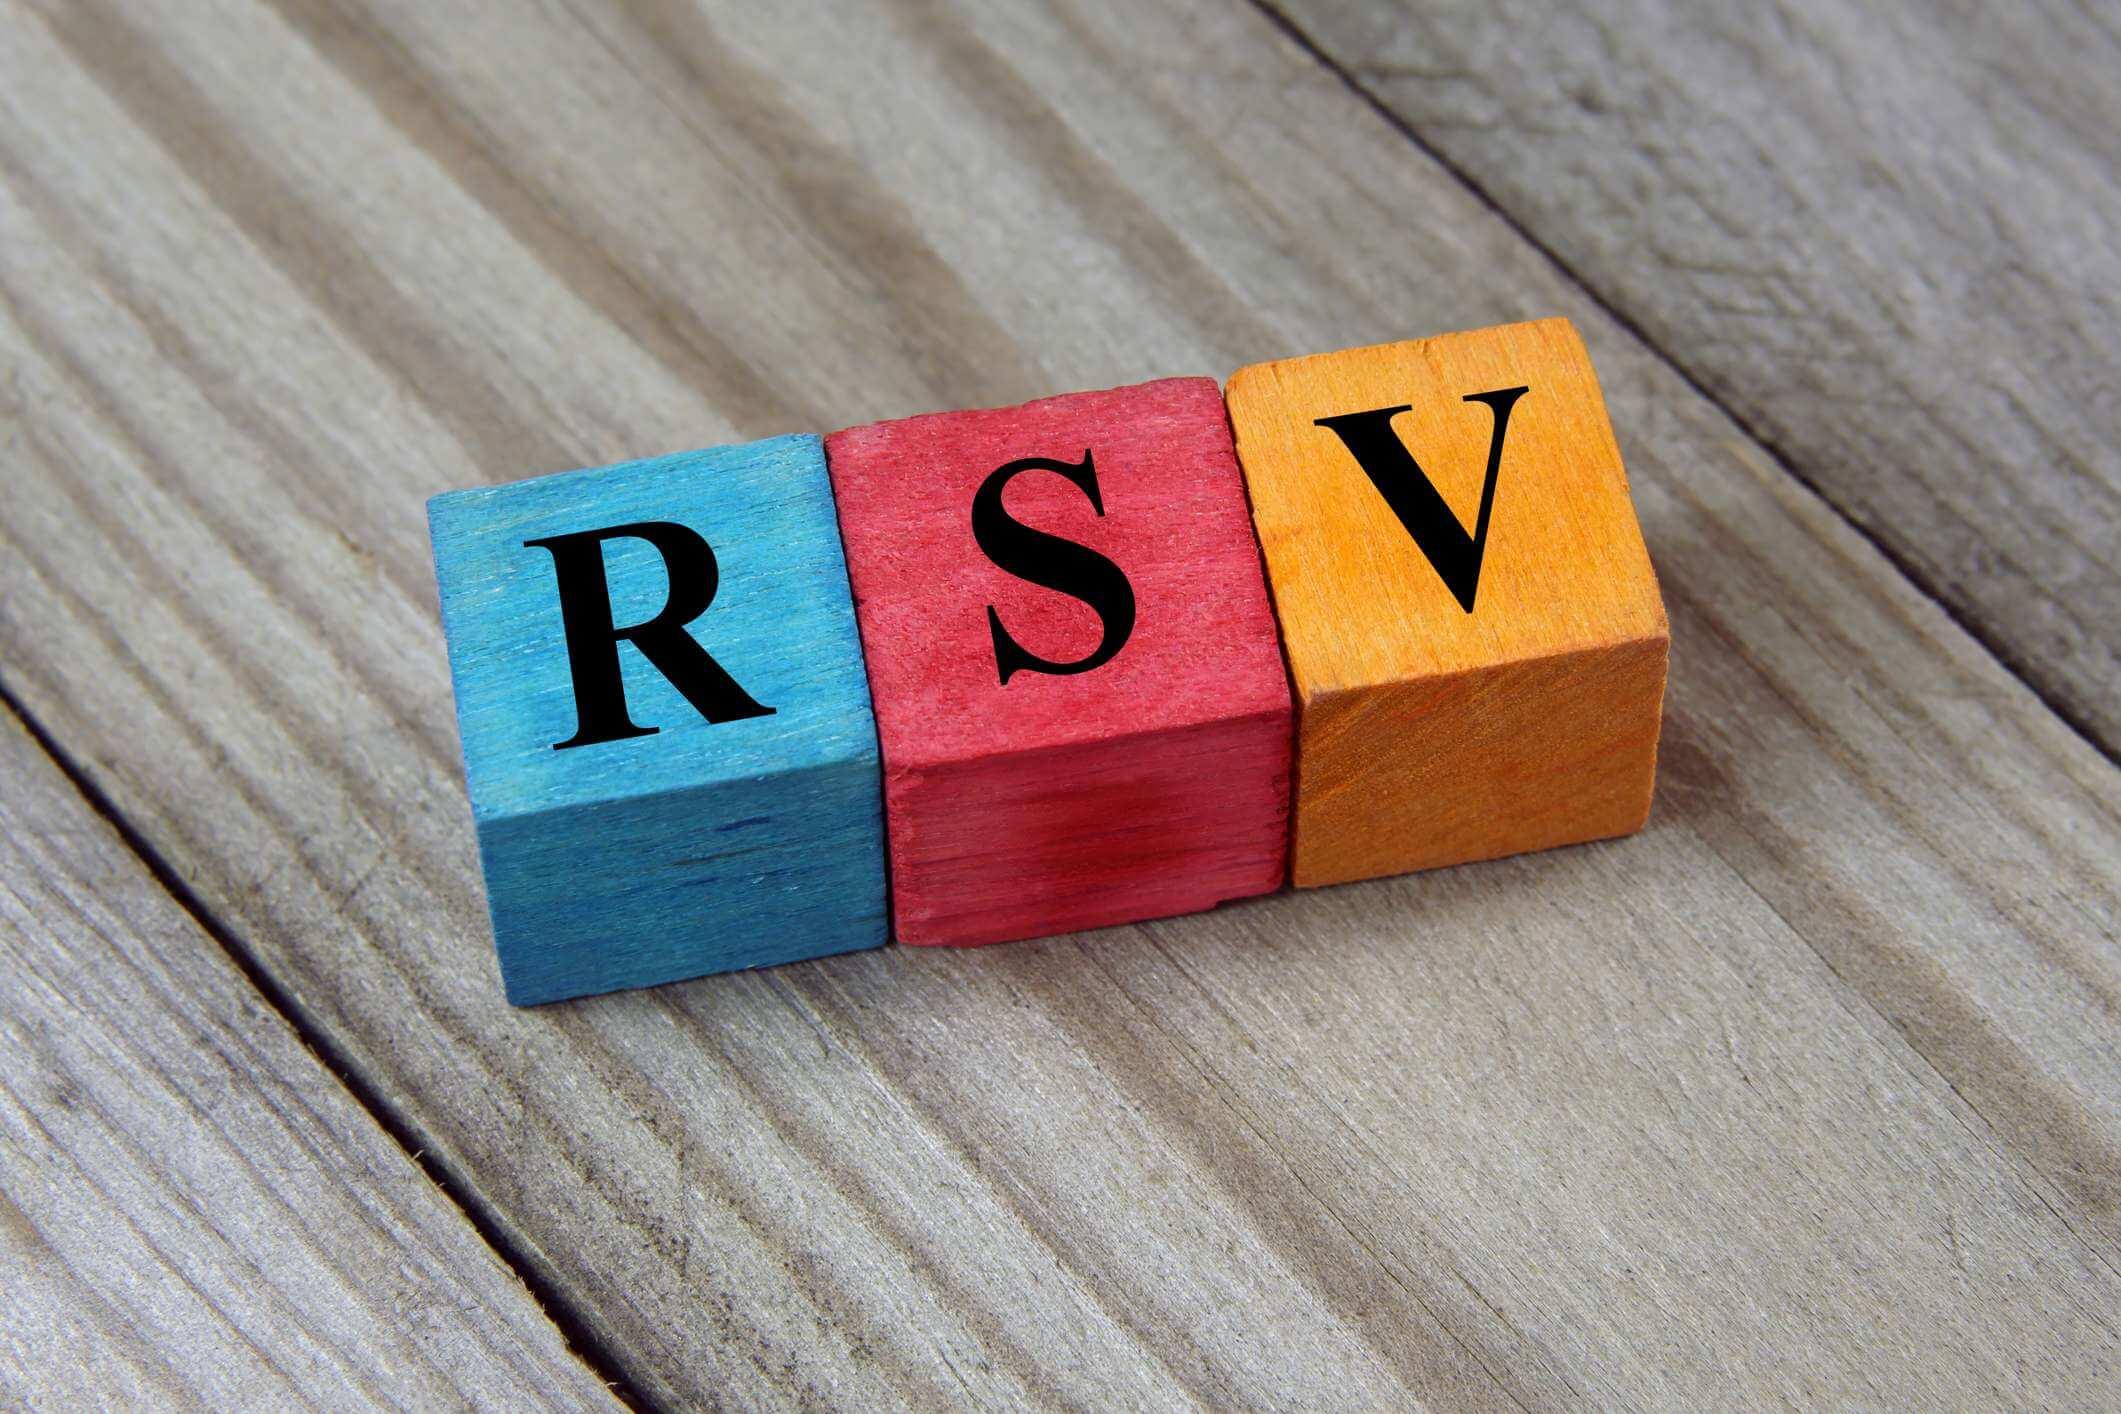 Akronym RSV (Respiratory Syncitial Virus) auf bunten Holzwürfeln